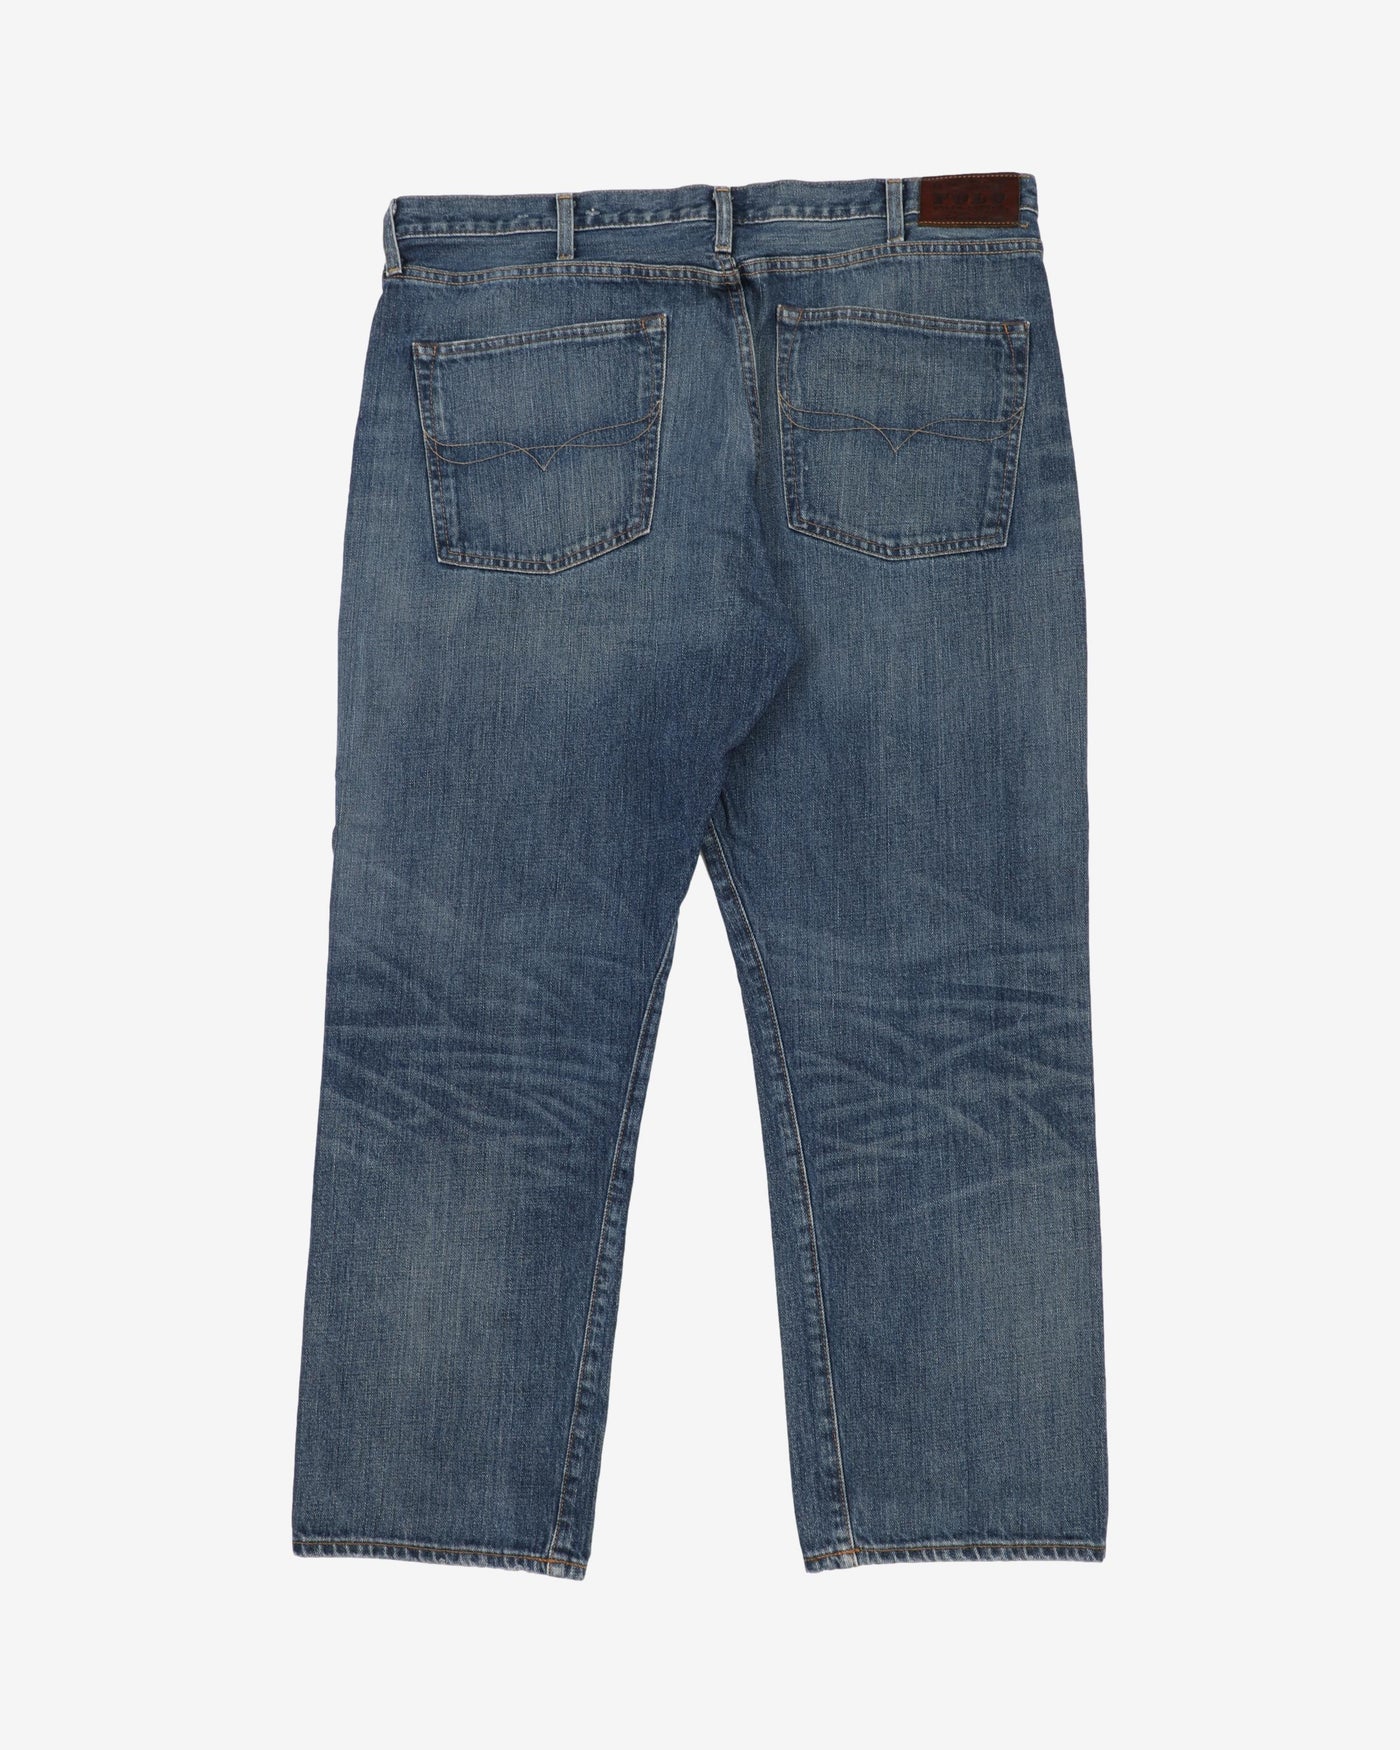 Vintage 90s Ralph Lauren RL Dark Blue Denim Jeans - W40 L30